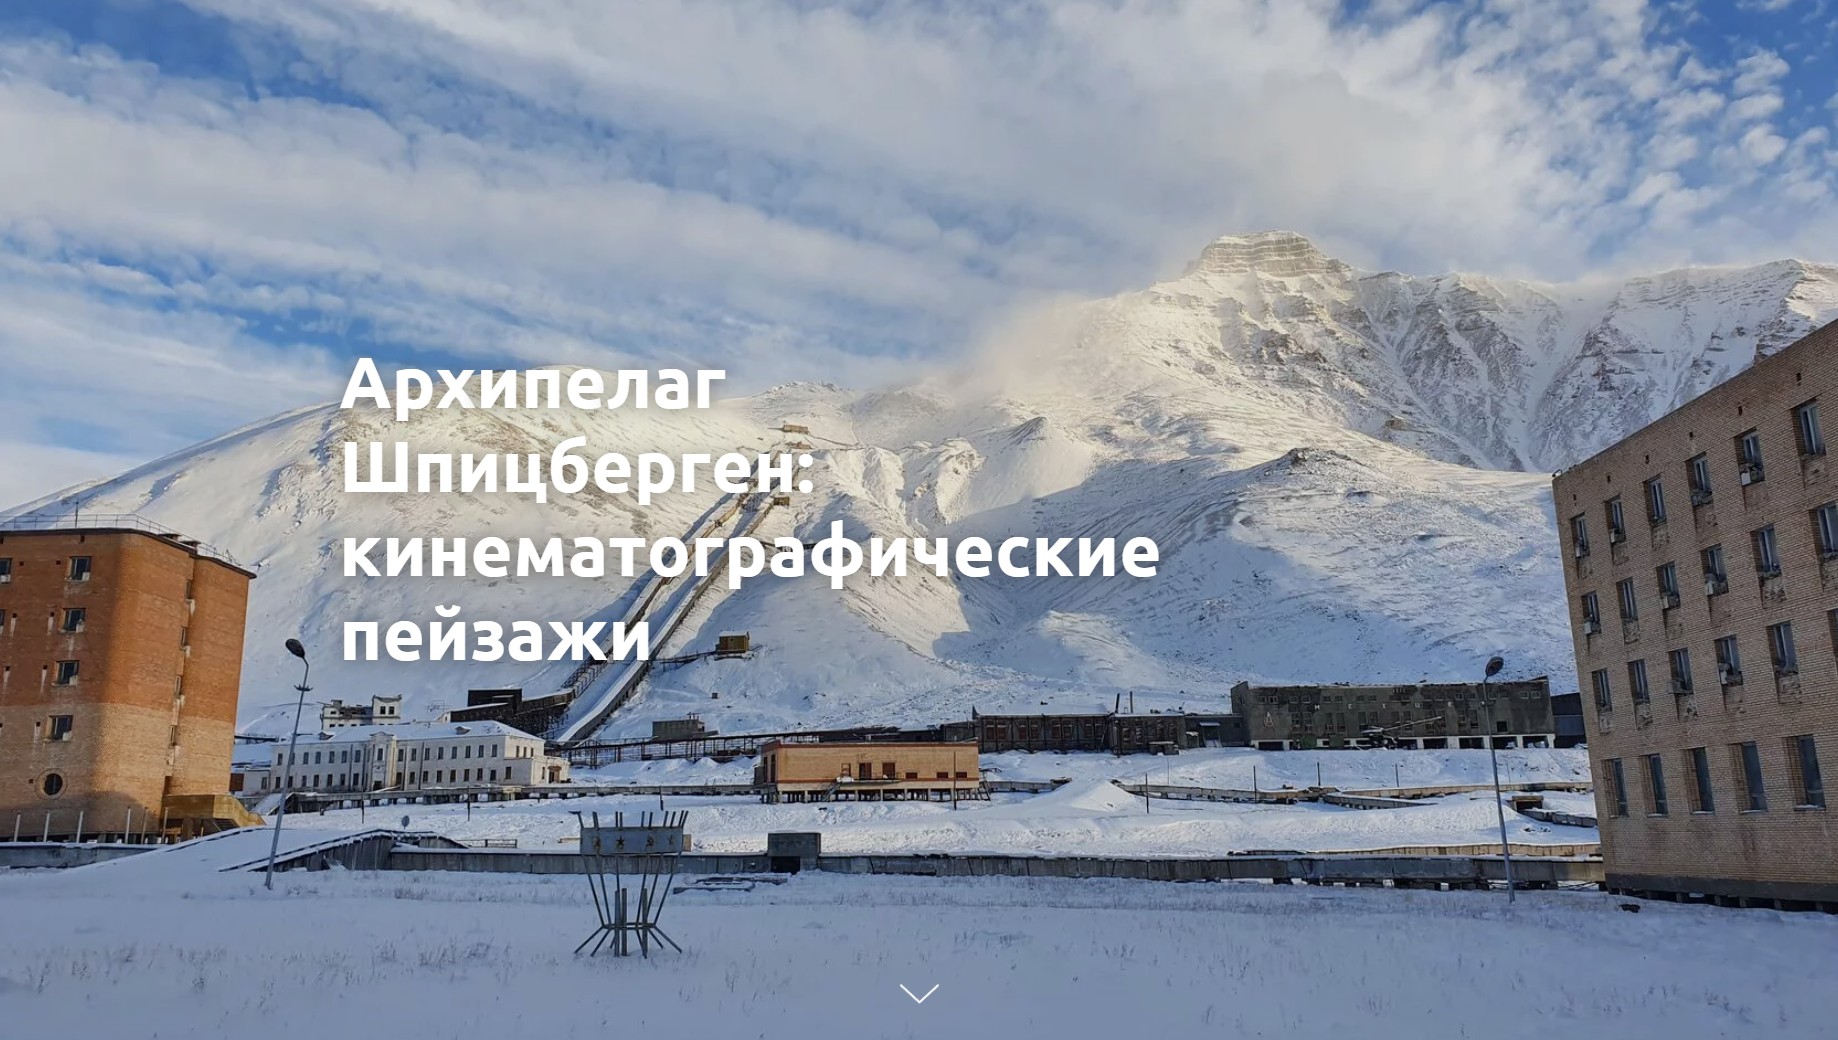 Сайт для профессионалов в области кино www.arctic-location.ru